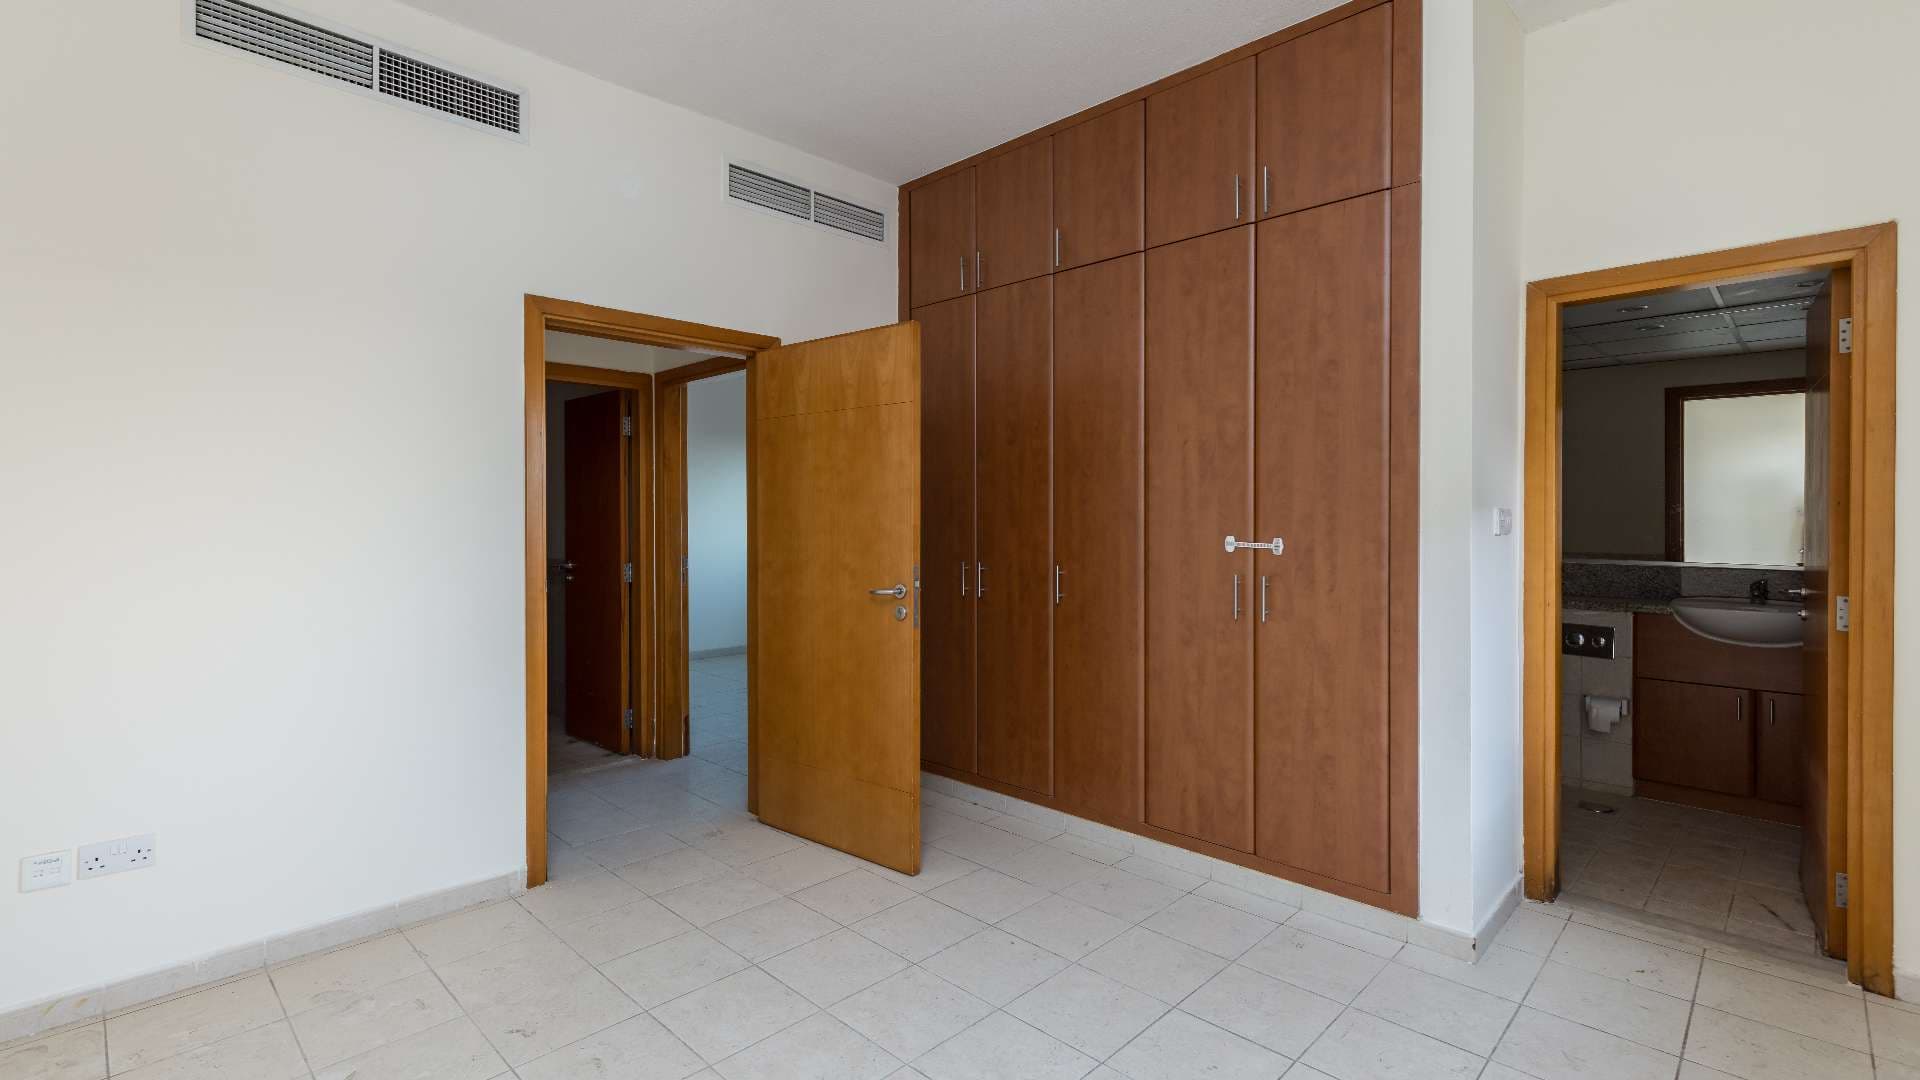 2 Bedroom Apartment For Sale Al Alka Lp09522 2cab77d15be1c800.jpg